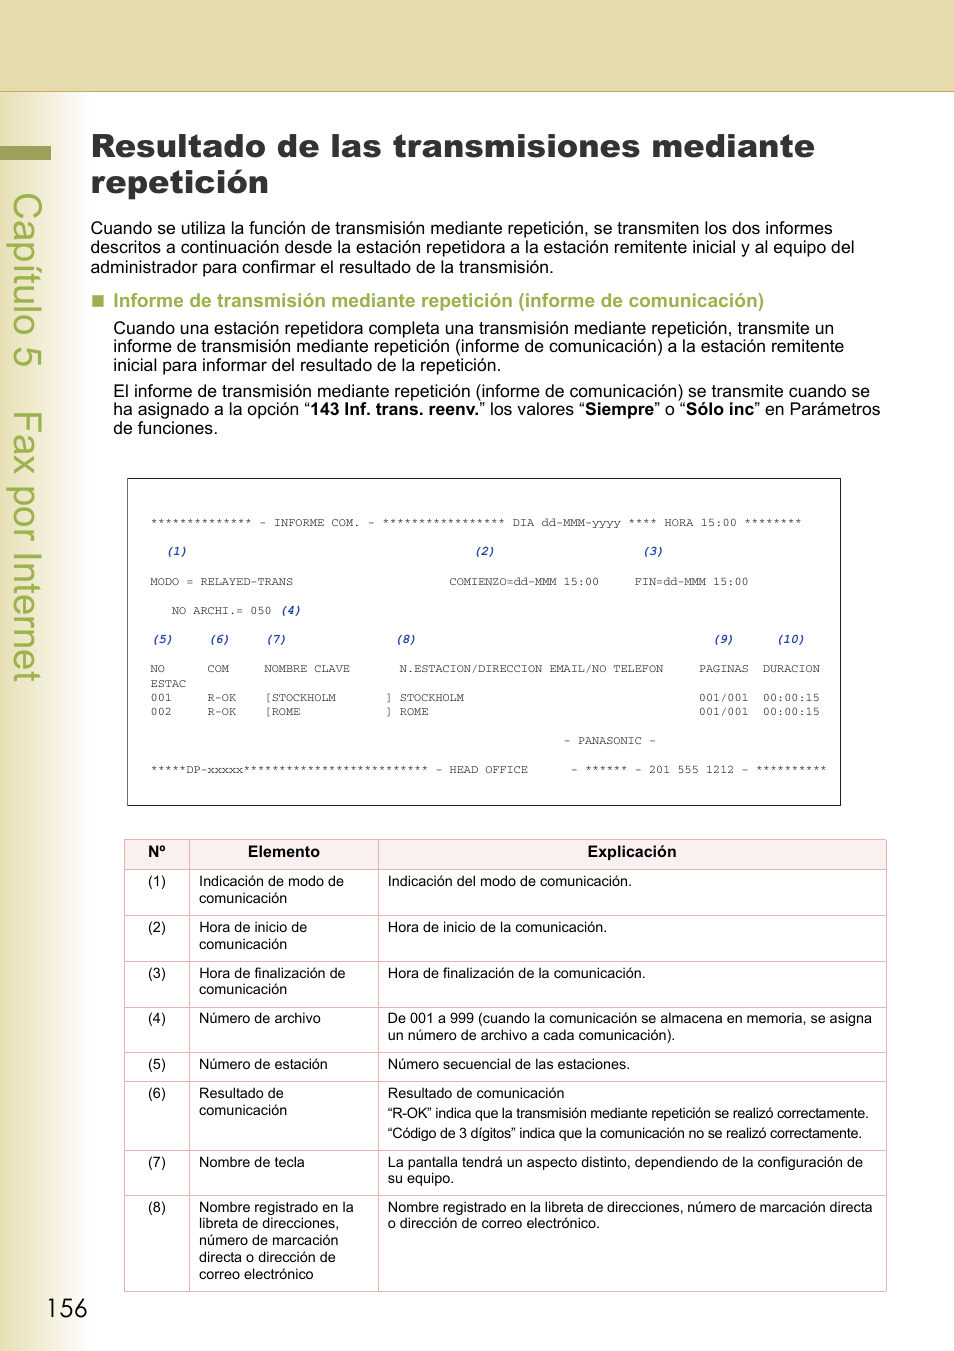 Resultado de las transmisiones mediante repetición, Capítulo 5 fax por internet | Panasonic DPC263 Manual del usuario | Página 156 / 220